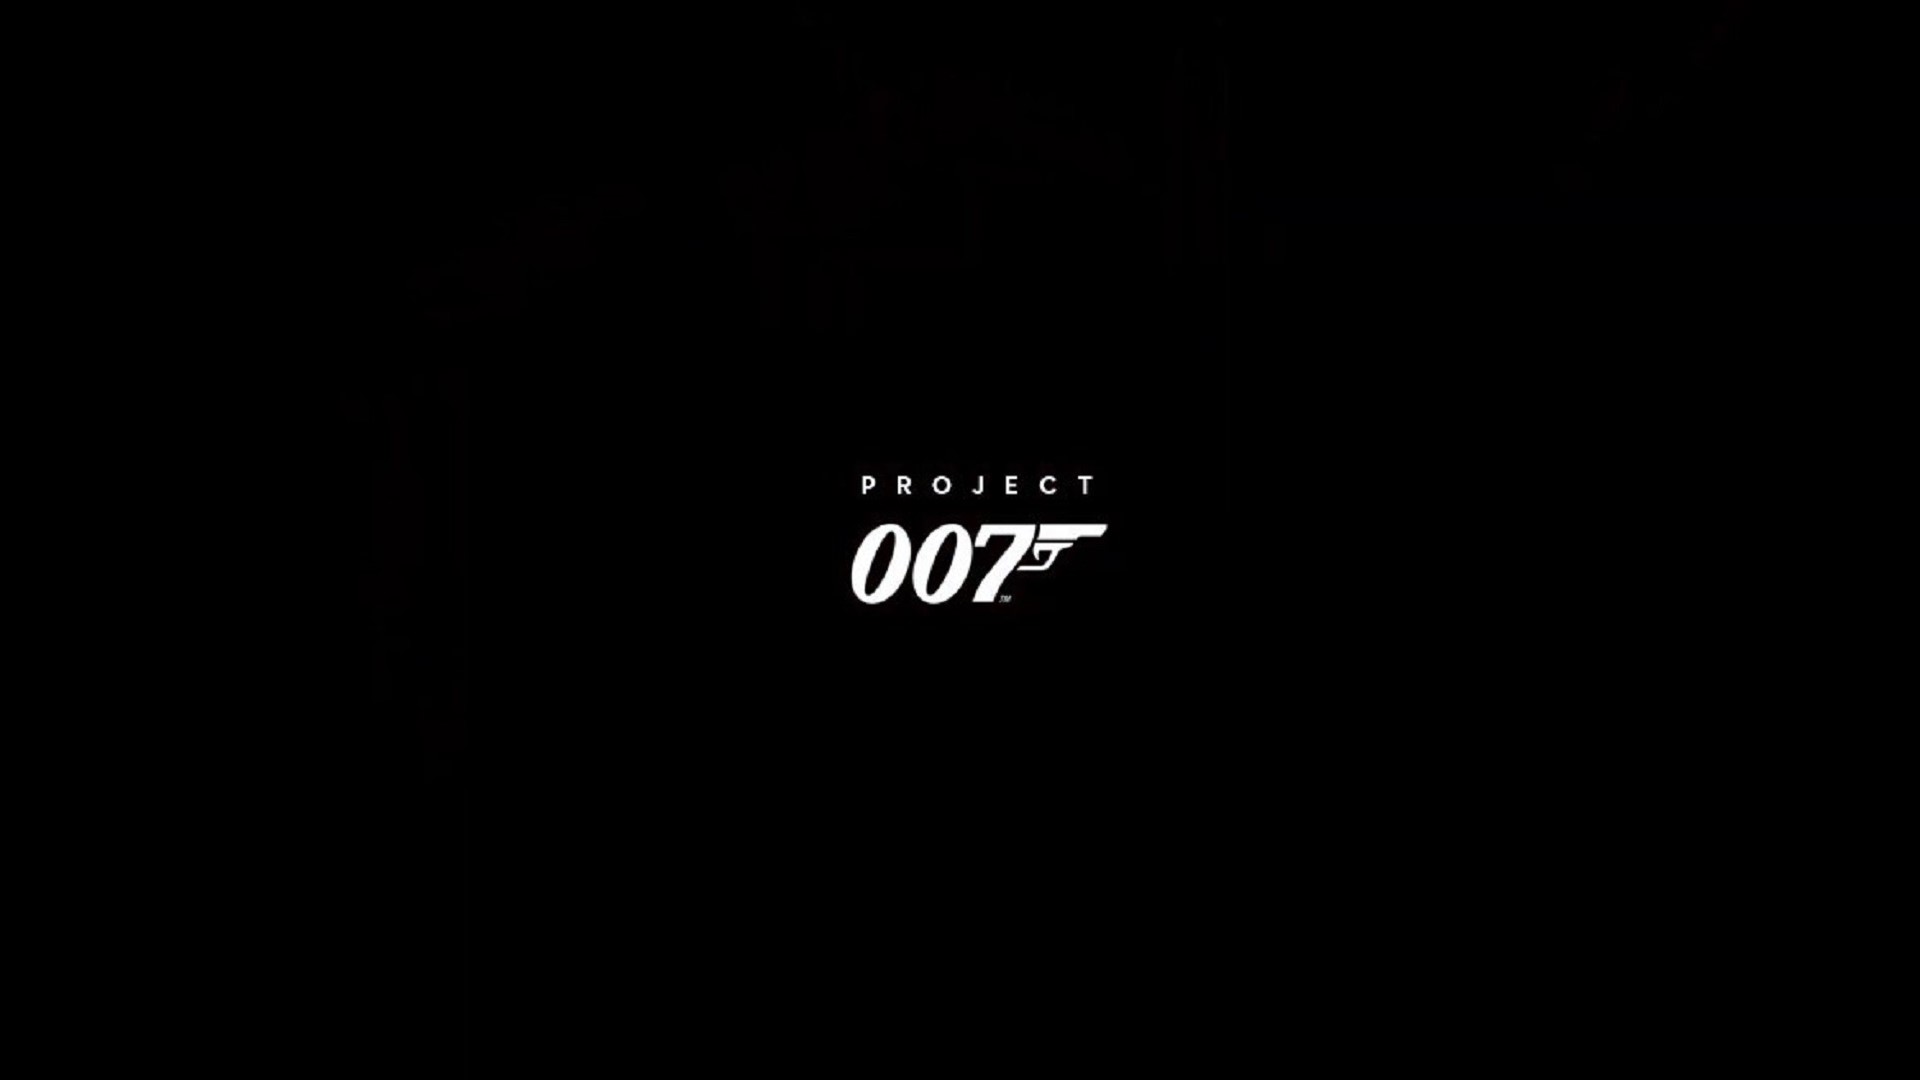 Projekto 007 vaizdas